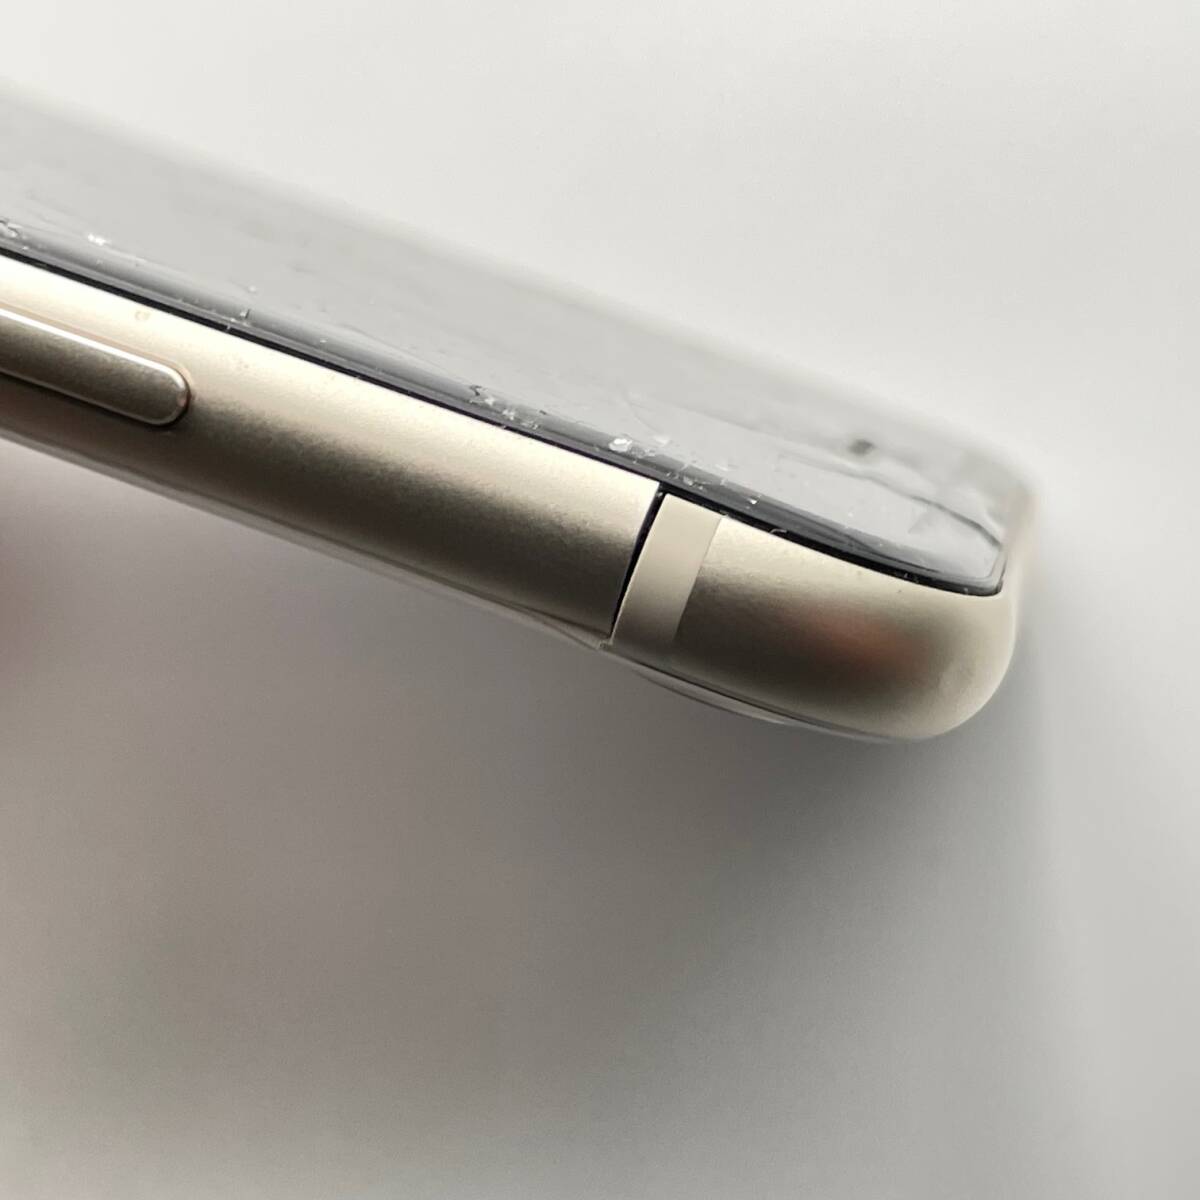  снятие деталей специальный утиль Apple Apple iPhone SE no. 3 поколение 64GB Star свет SIM блокировка нет SIM свободный 1 иен из распродажа 